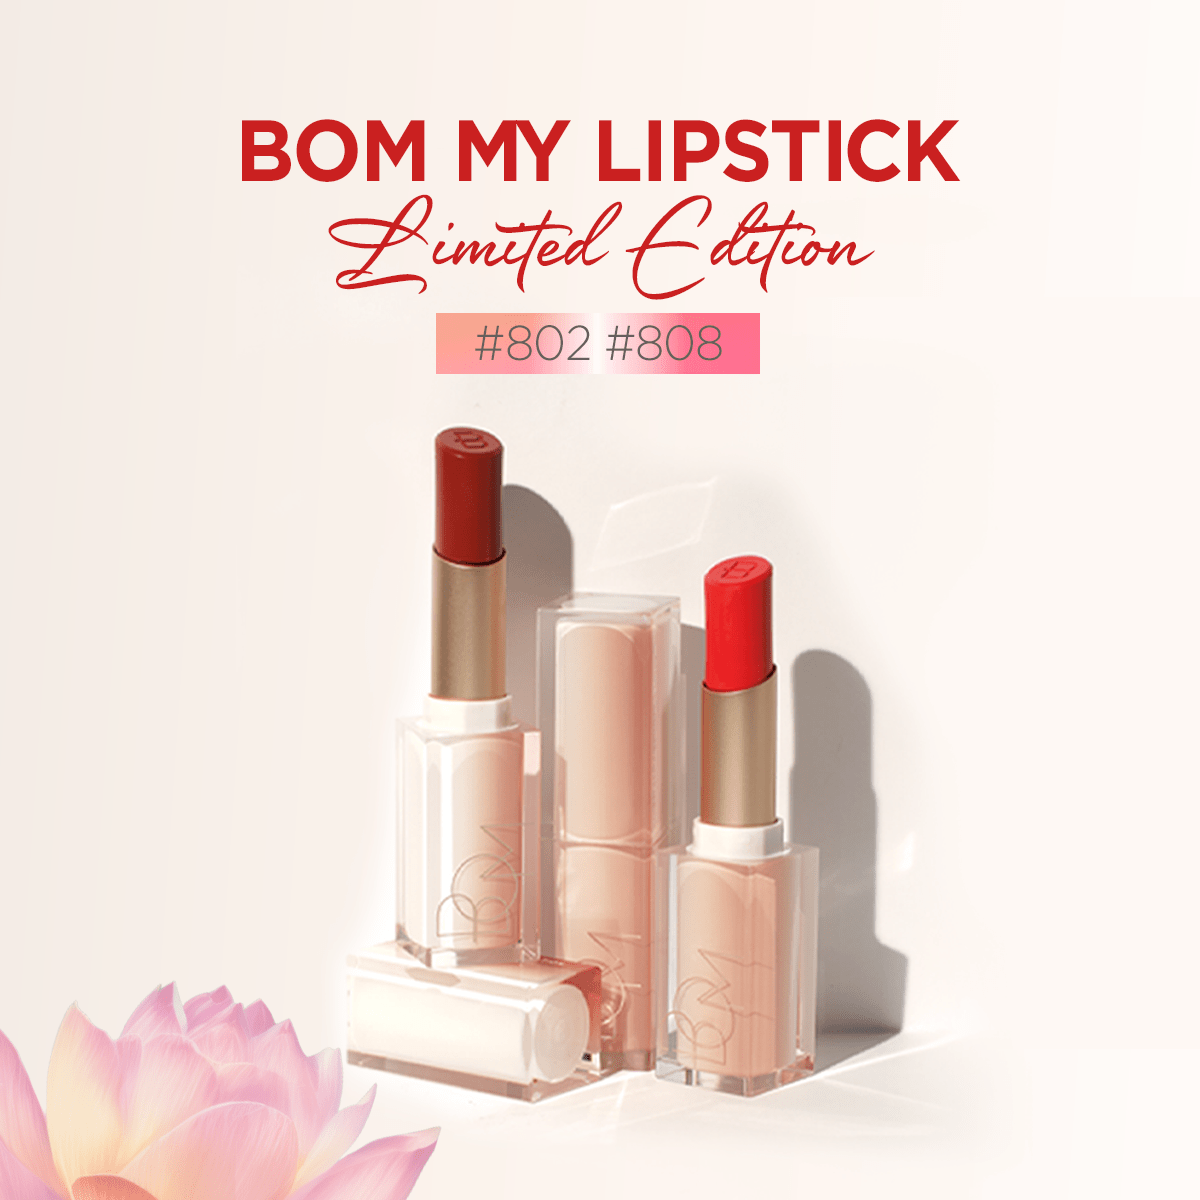 Tại sao nên mua son môi BOM My Lipstick để tặng quà 20/10 cho những người phụ nữ bạn yêu thương?